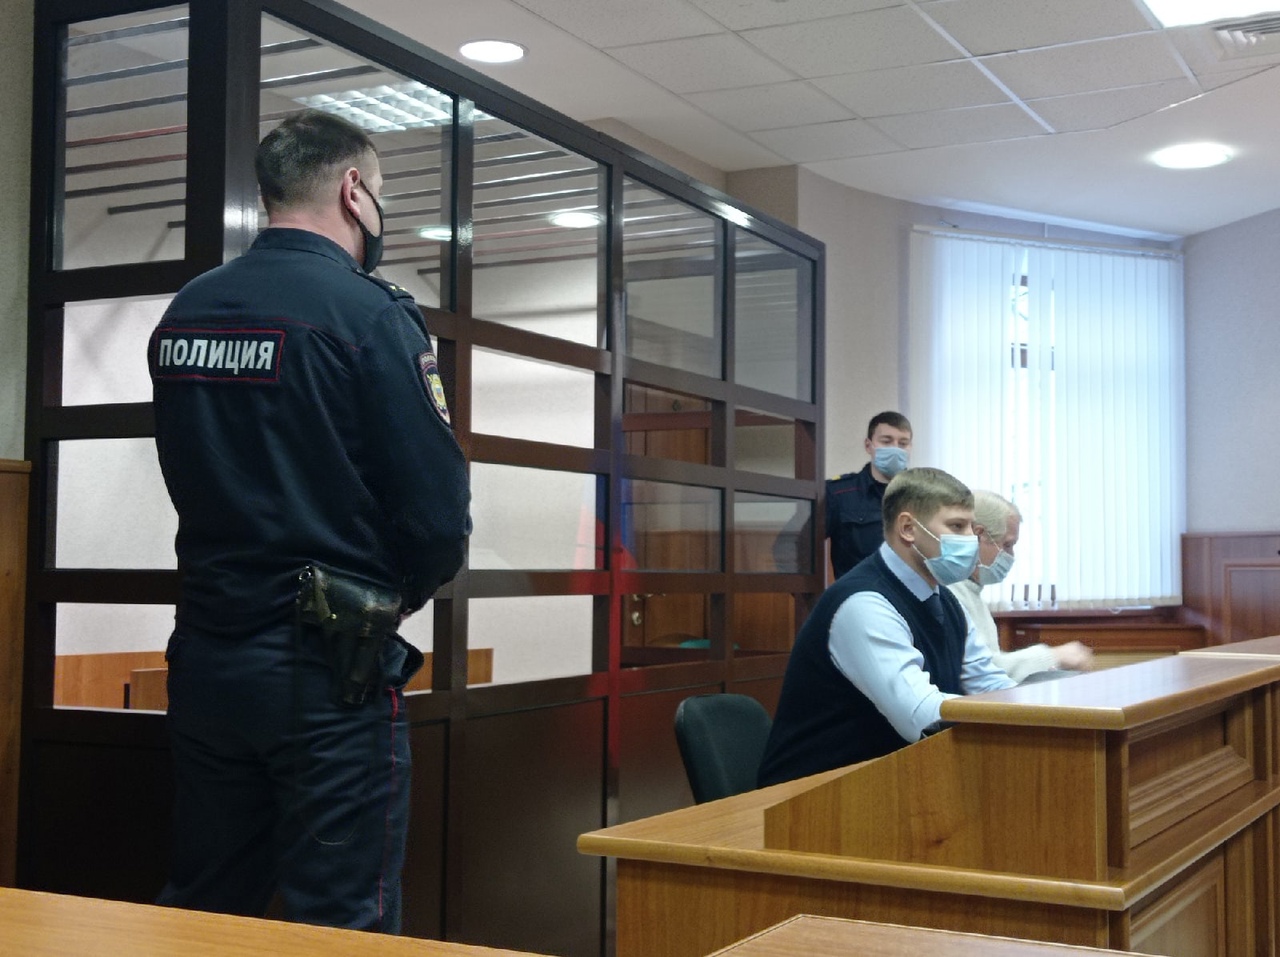 Ярославну будут судить за одиночный пикет